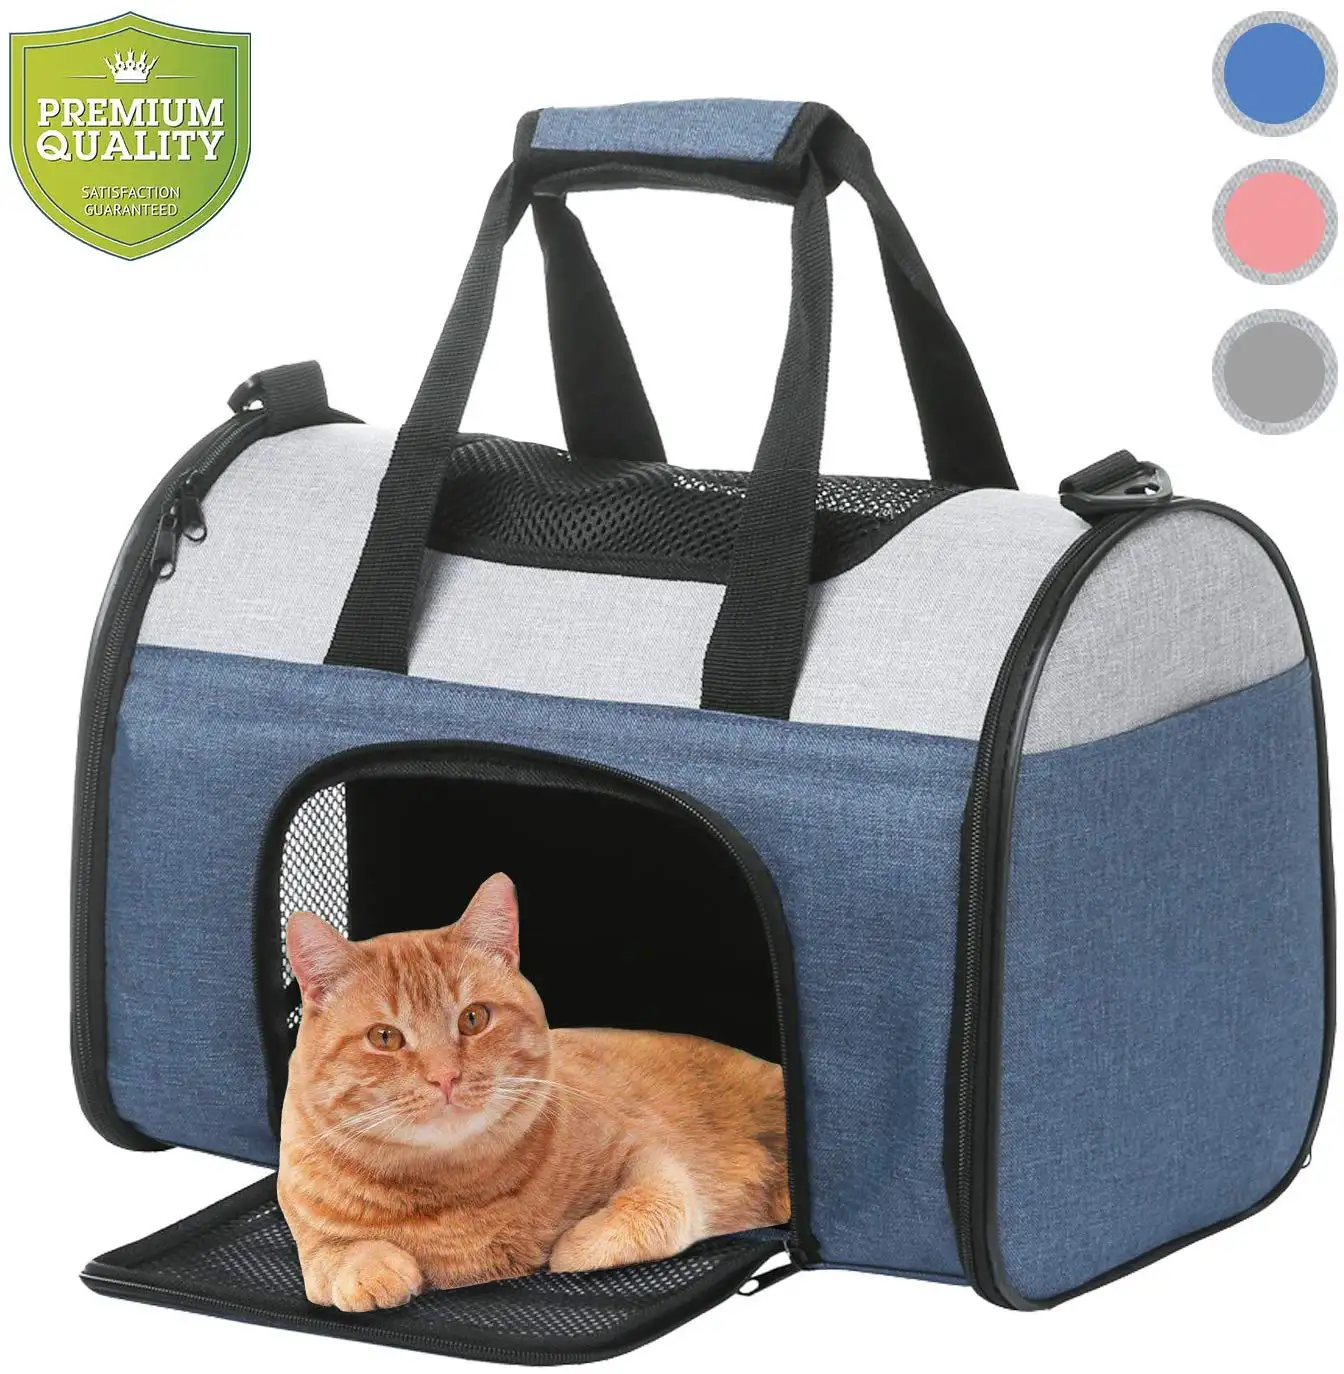 Nieuwe Ontwerp Carry Puppy Pet Carrier Bag Voor Hond Kat